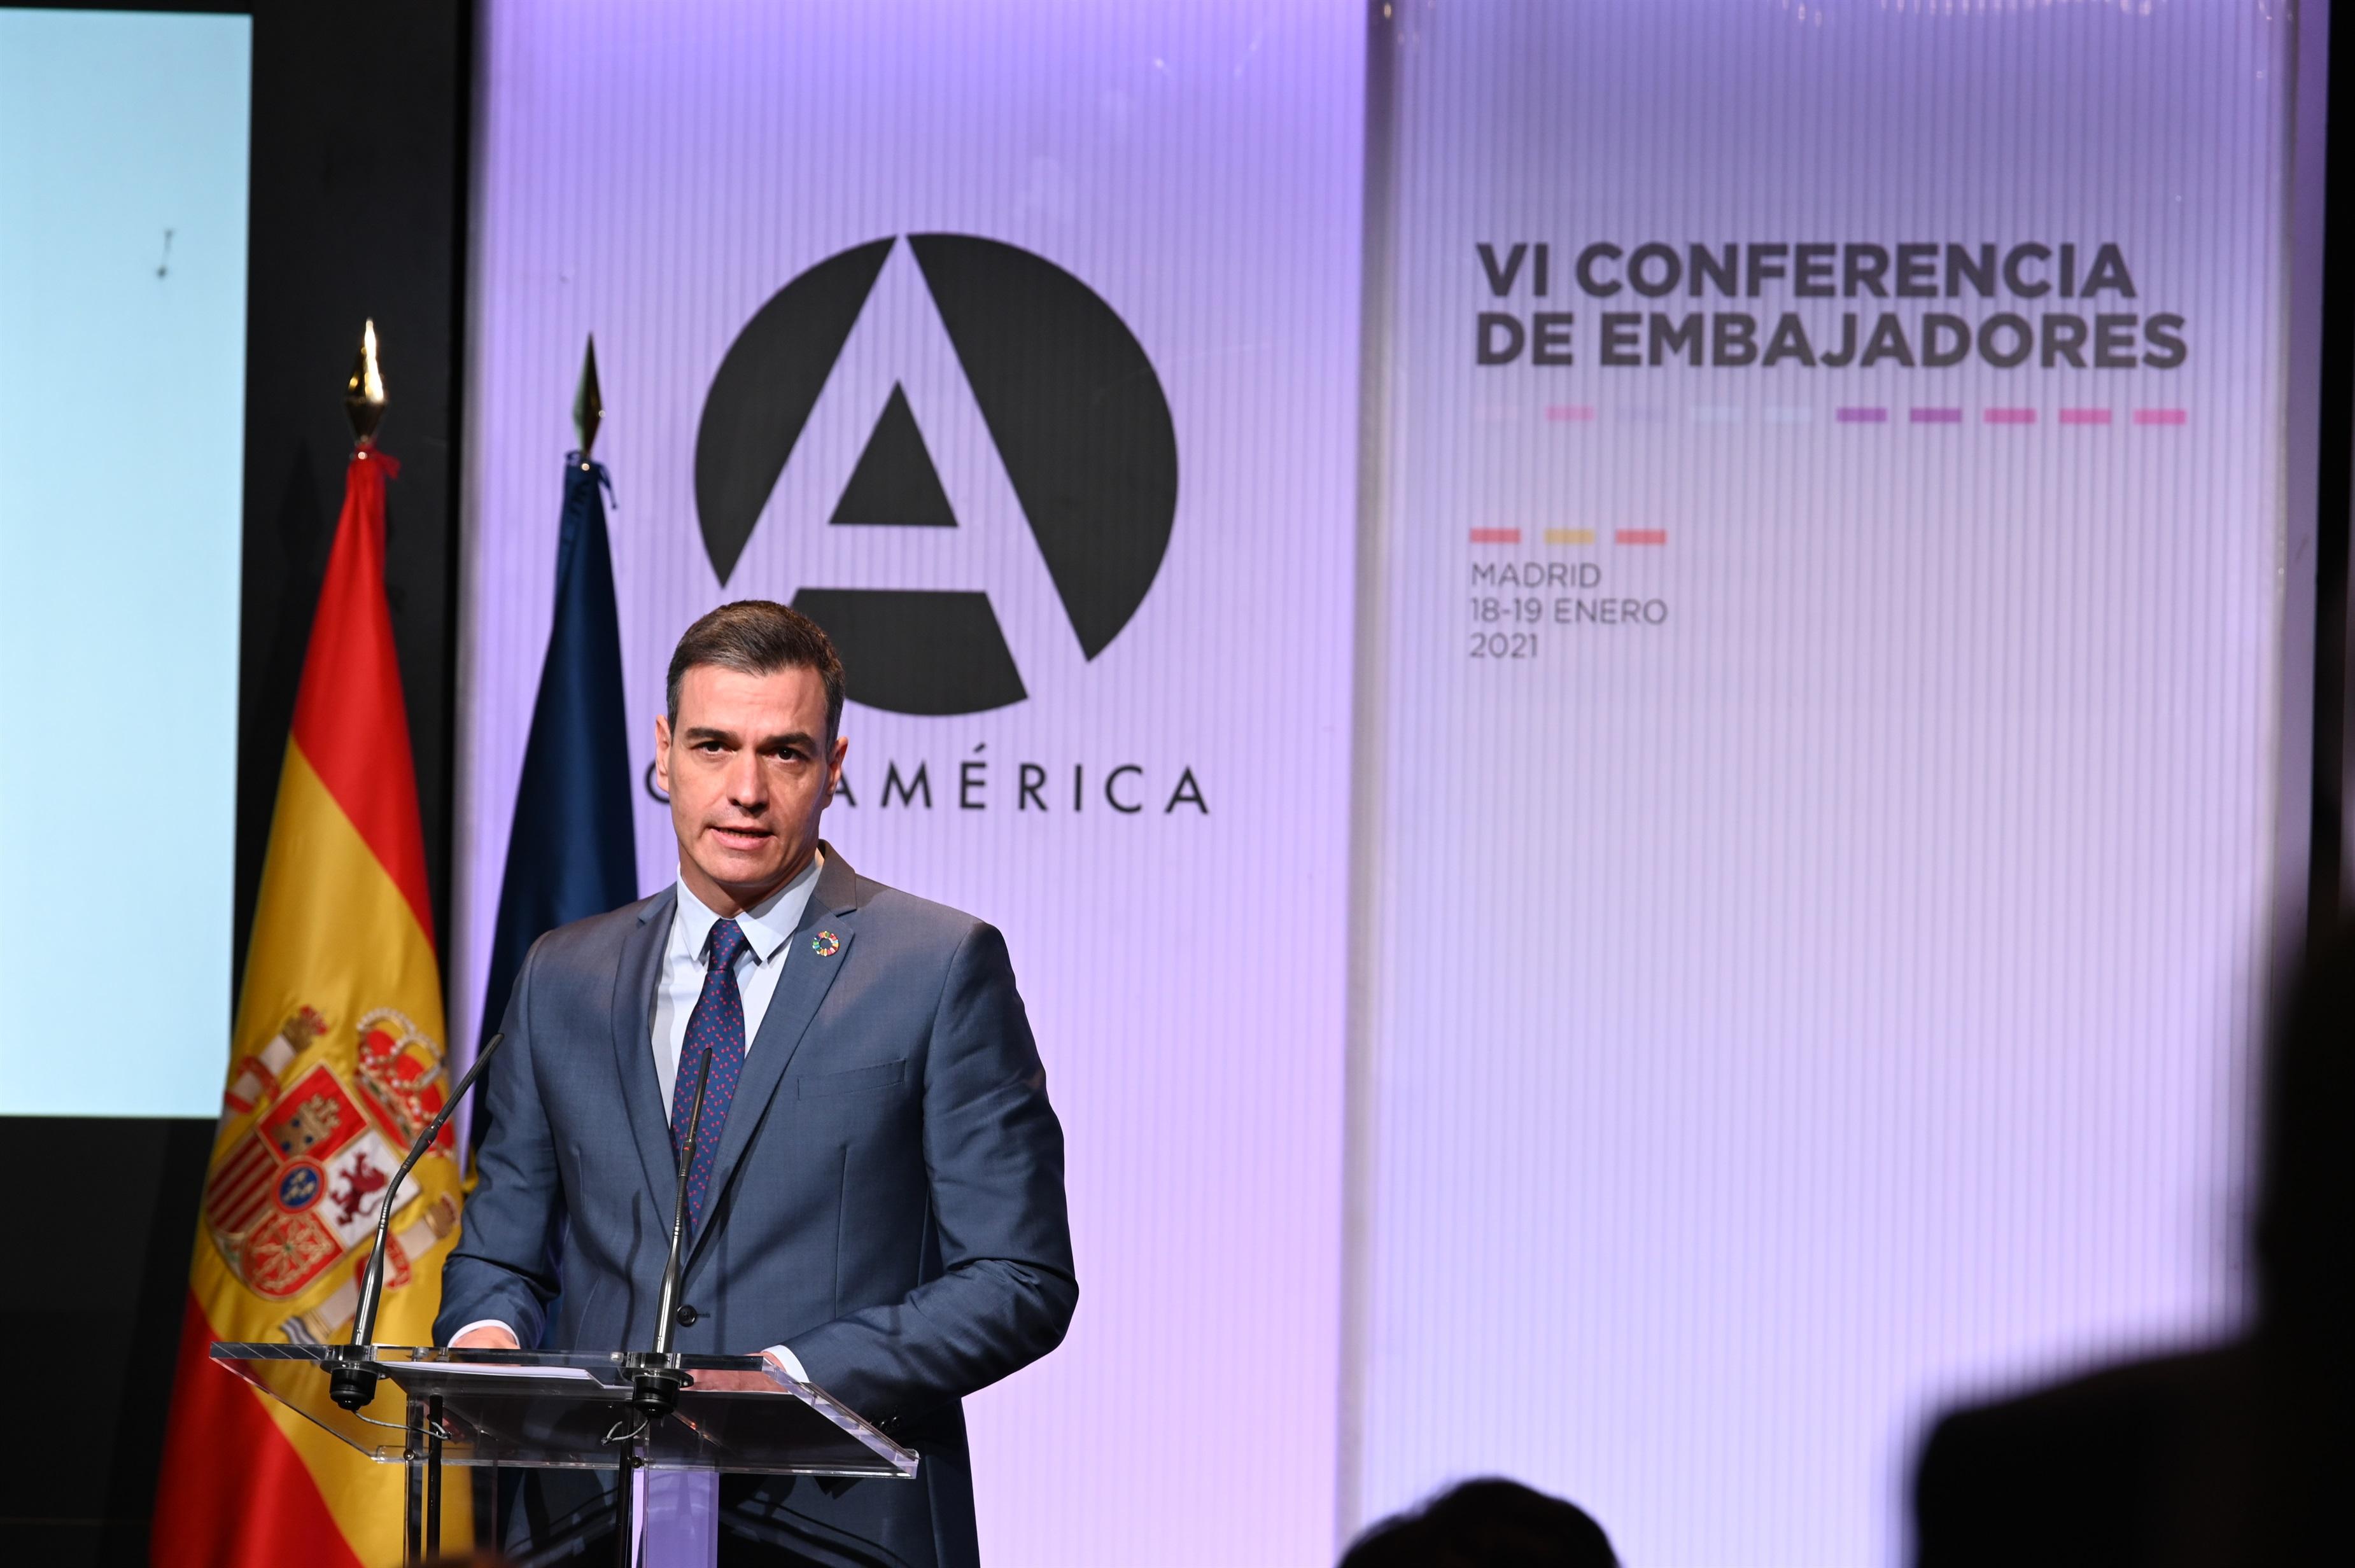 El presidente del Gobierno, Pedro Sánchez, interviene en la Conferencia de Embajadores. Europa Press. 